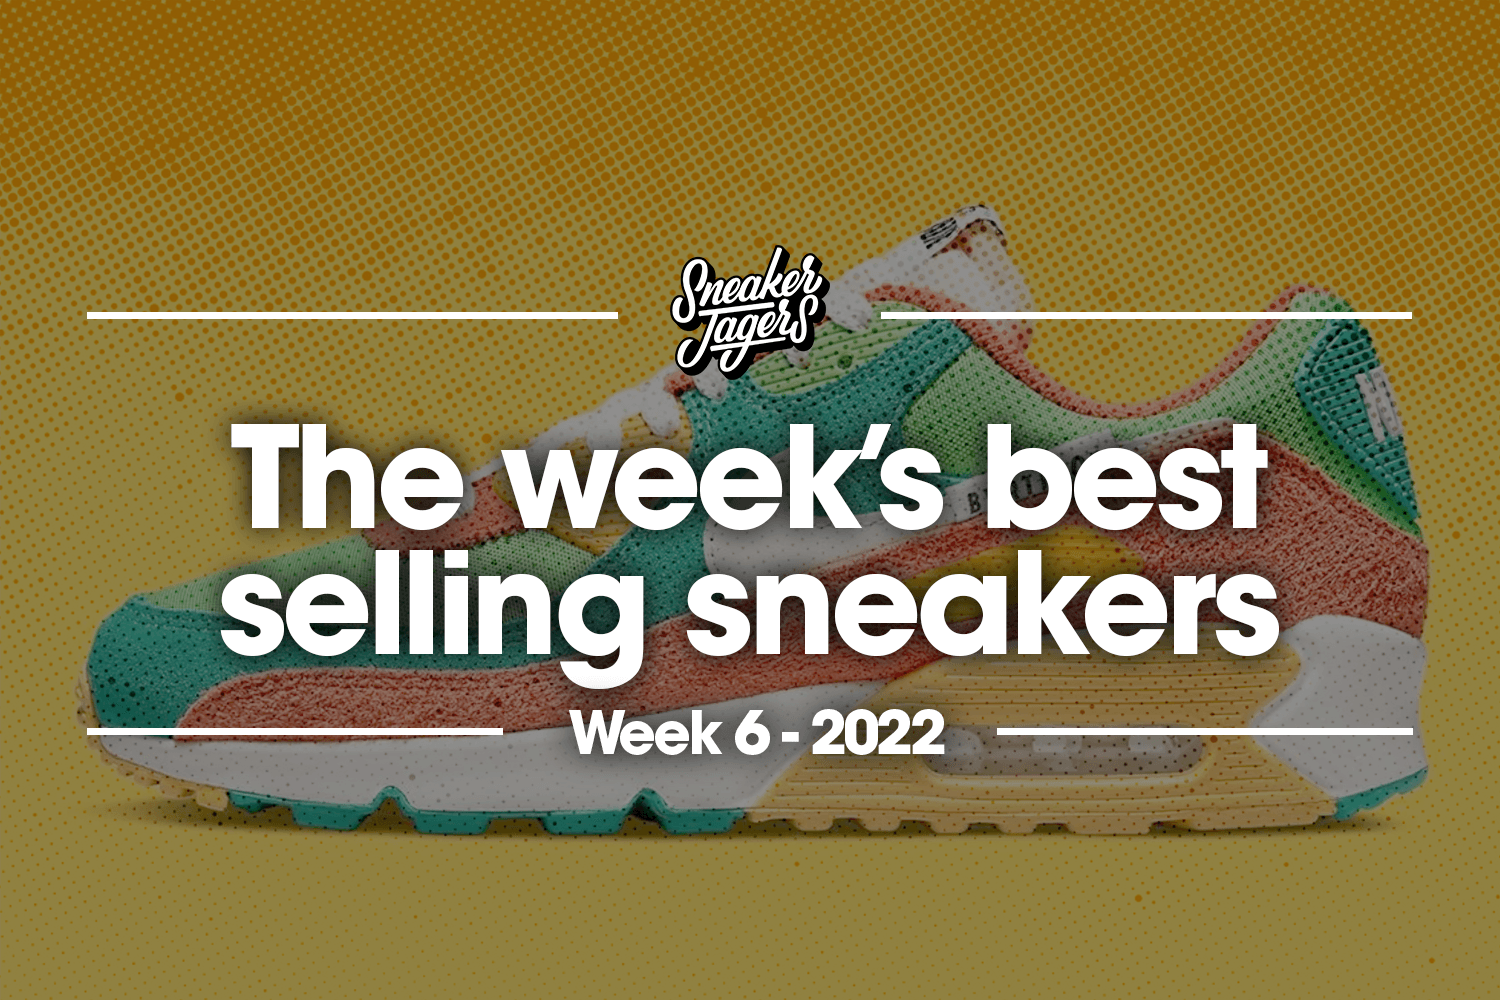 De 5 bestverkochte sneakers van week 6